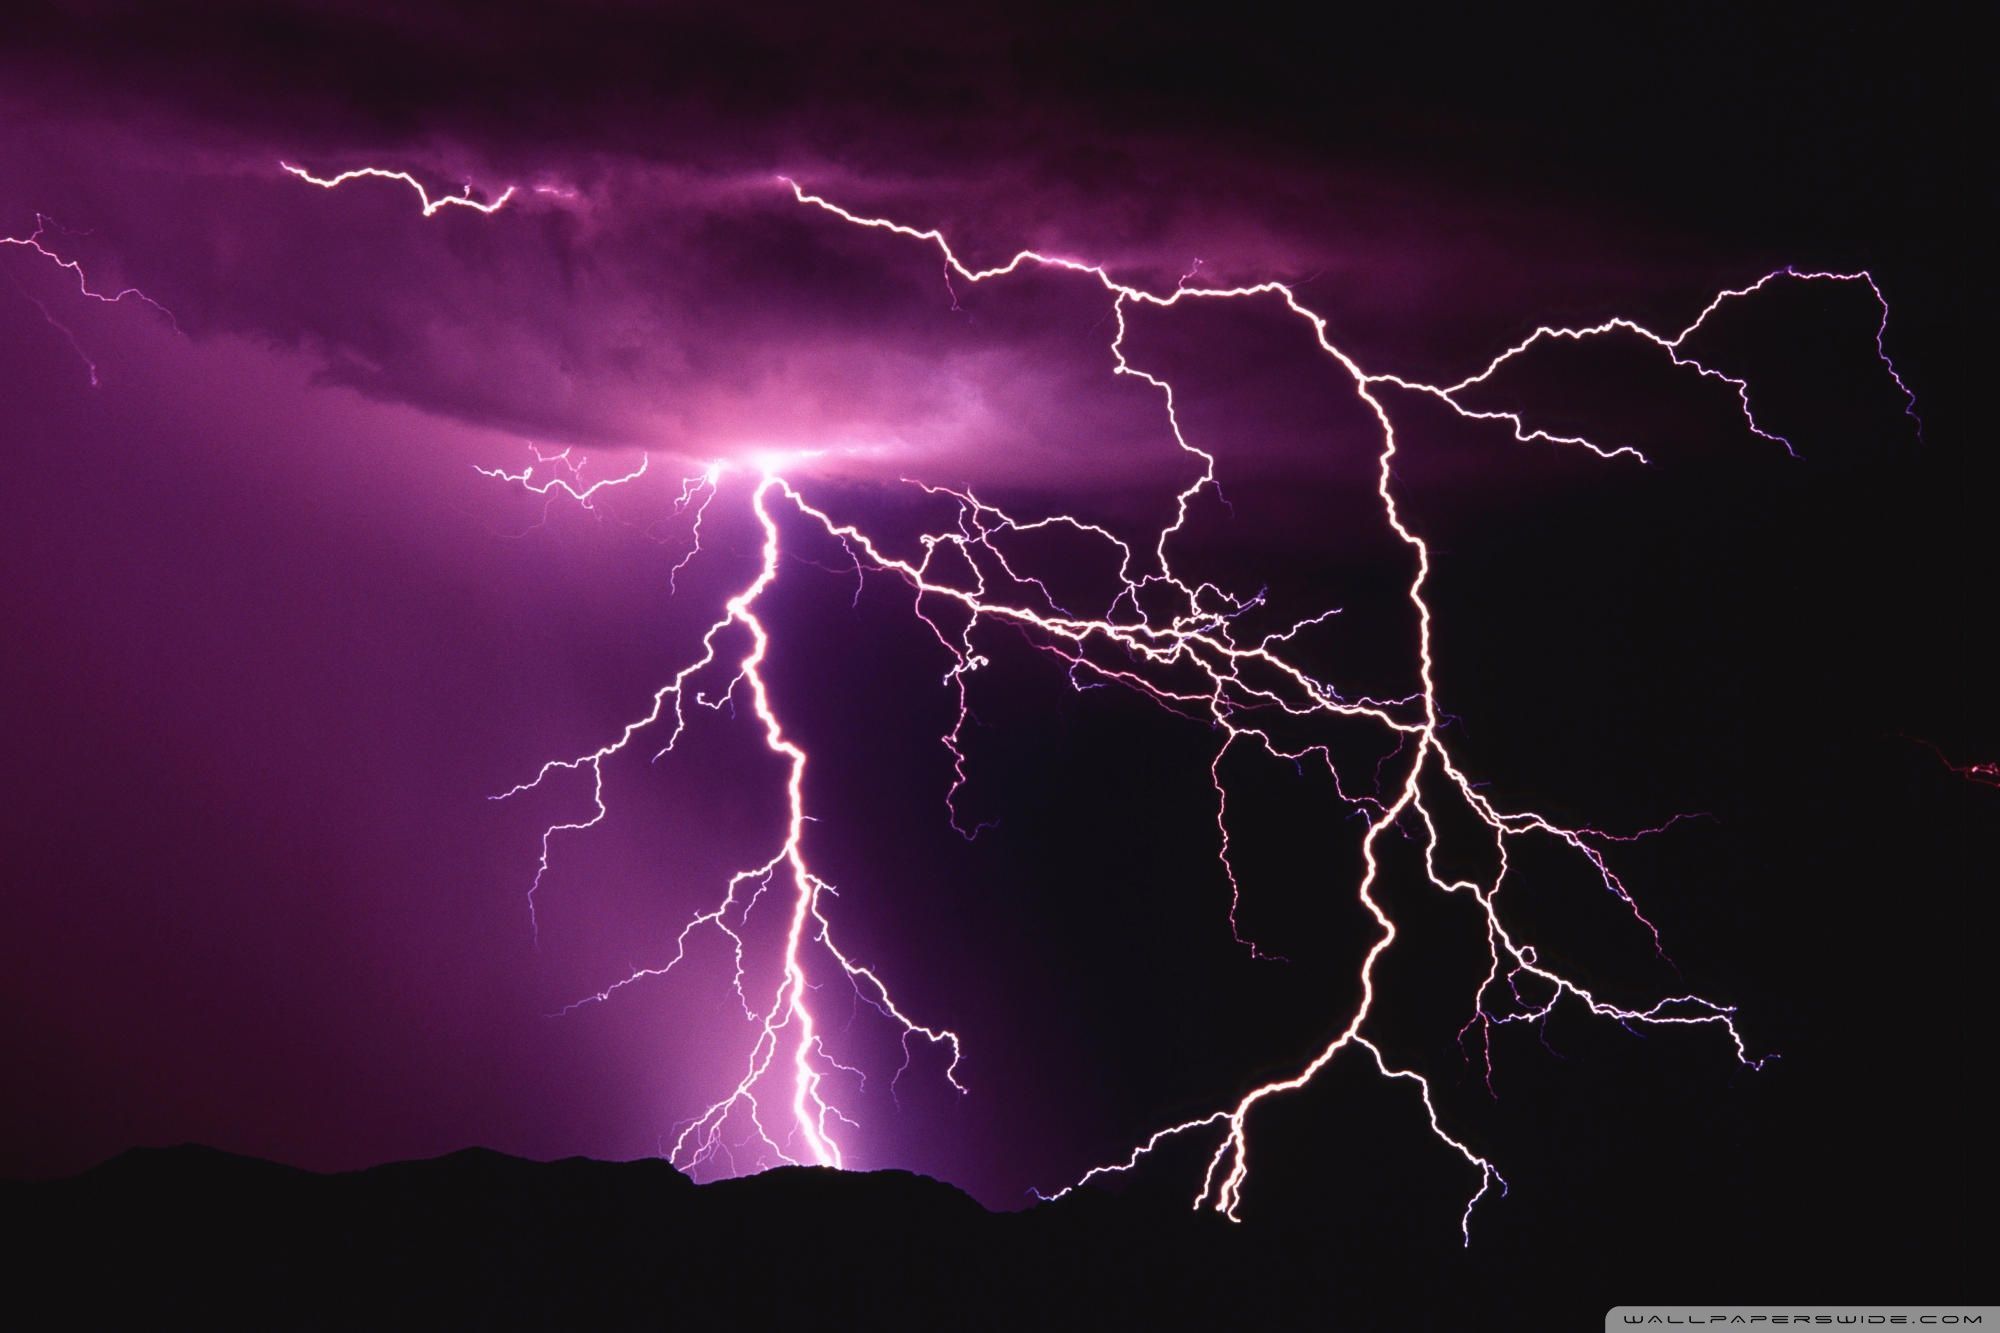 A purple lightning storm with many bolts - Lightning